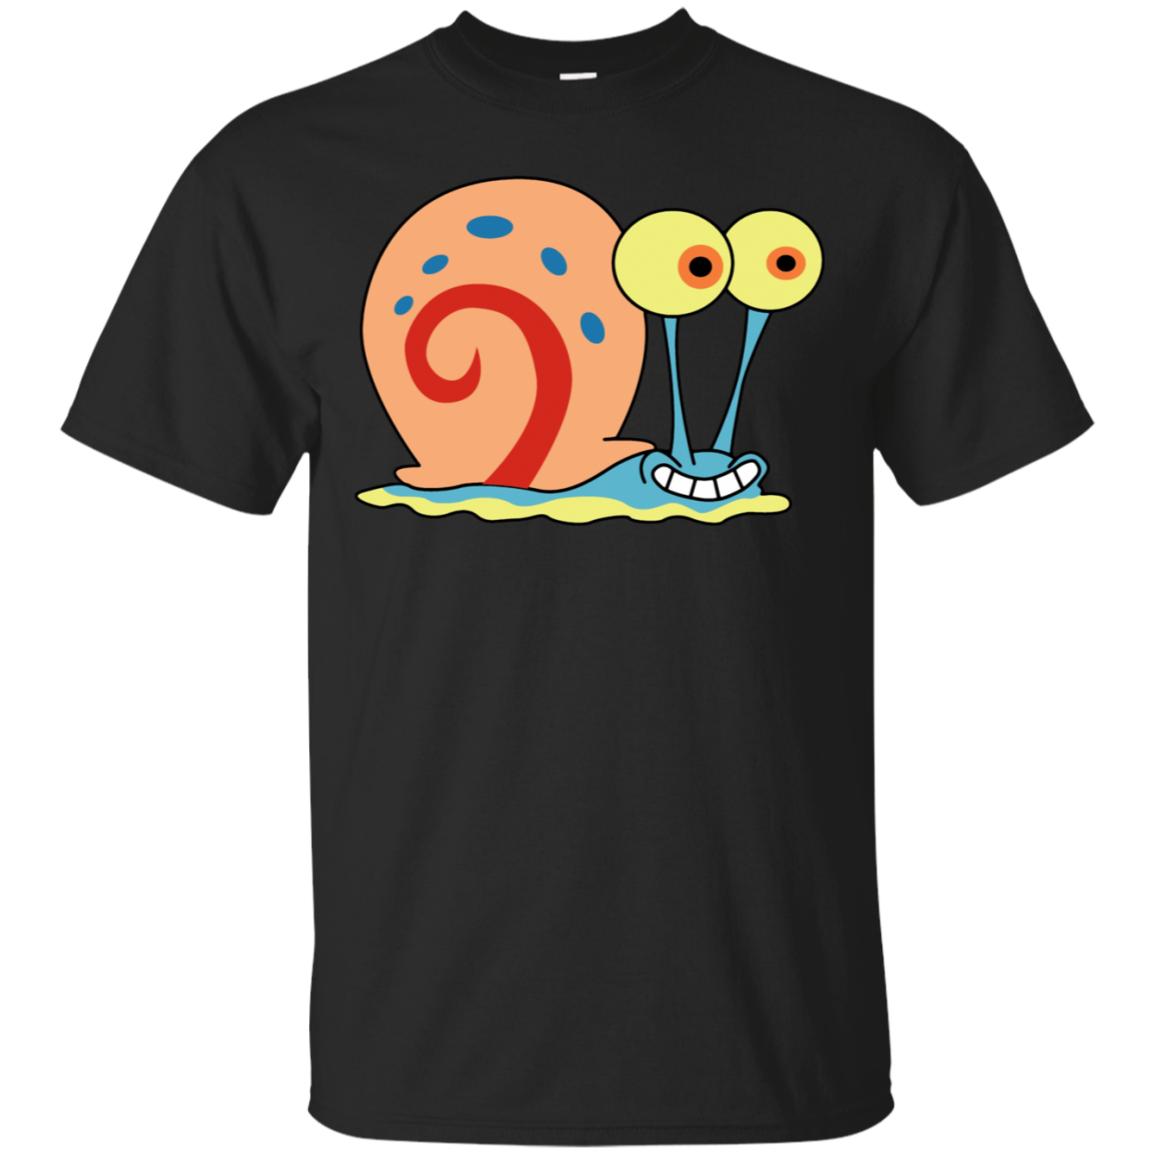 Gary The Snail T-Shirt